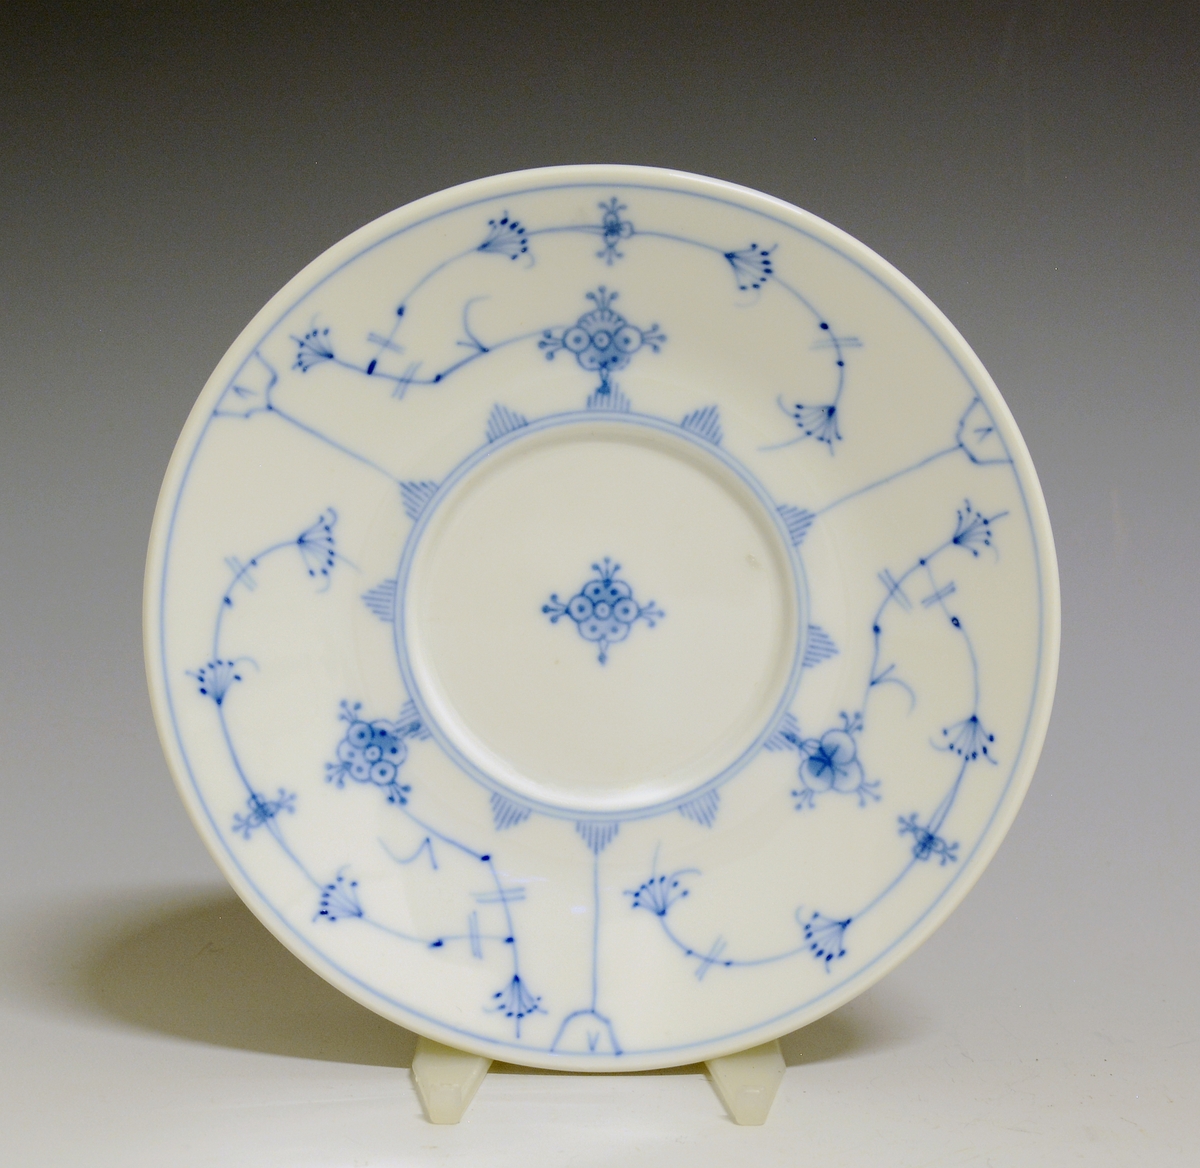 Skål til buljongbolle av porselen med hvit glasur. Dekorert med håndmalt stråmønster i blått.